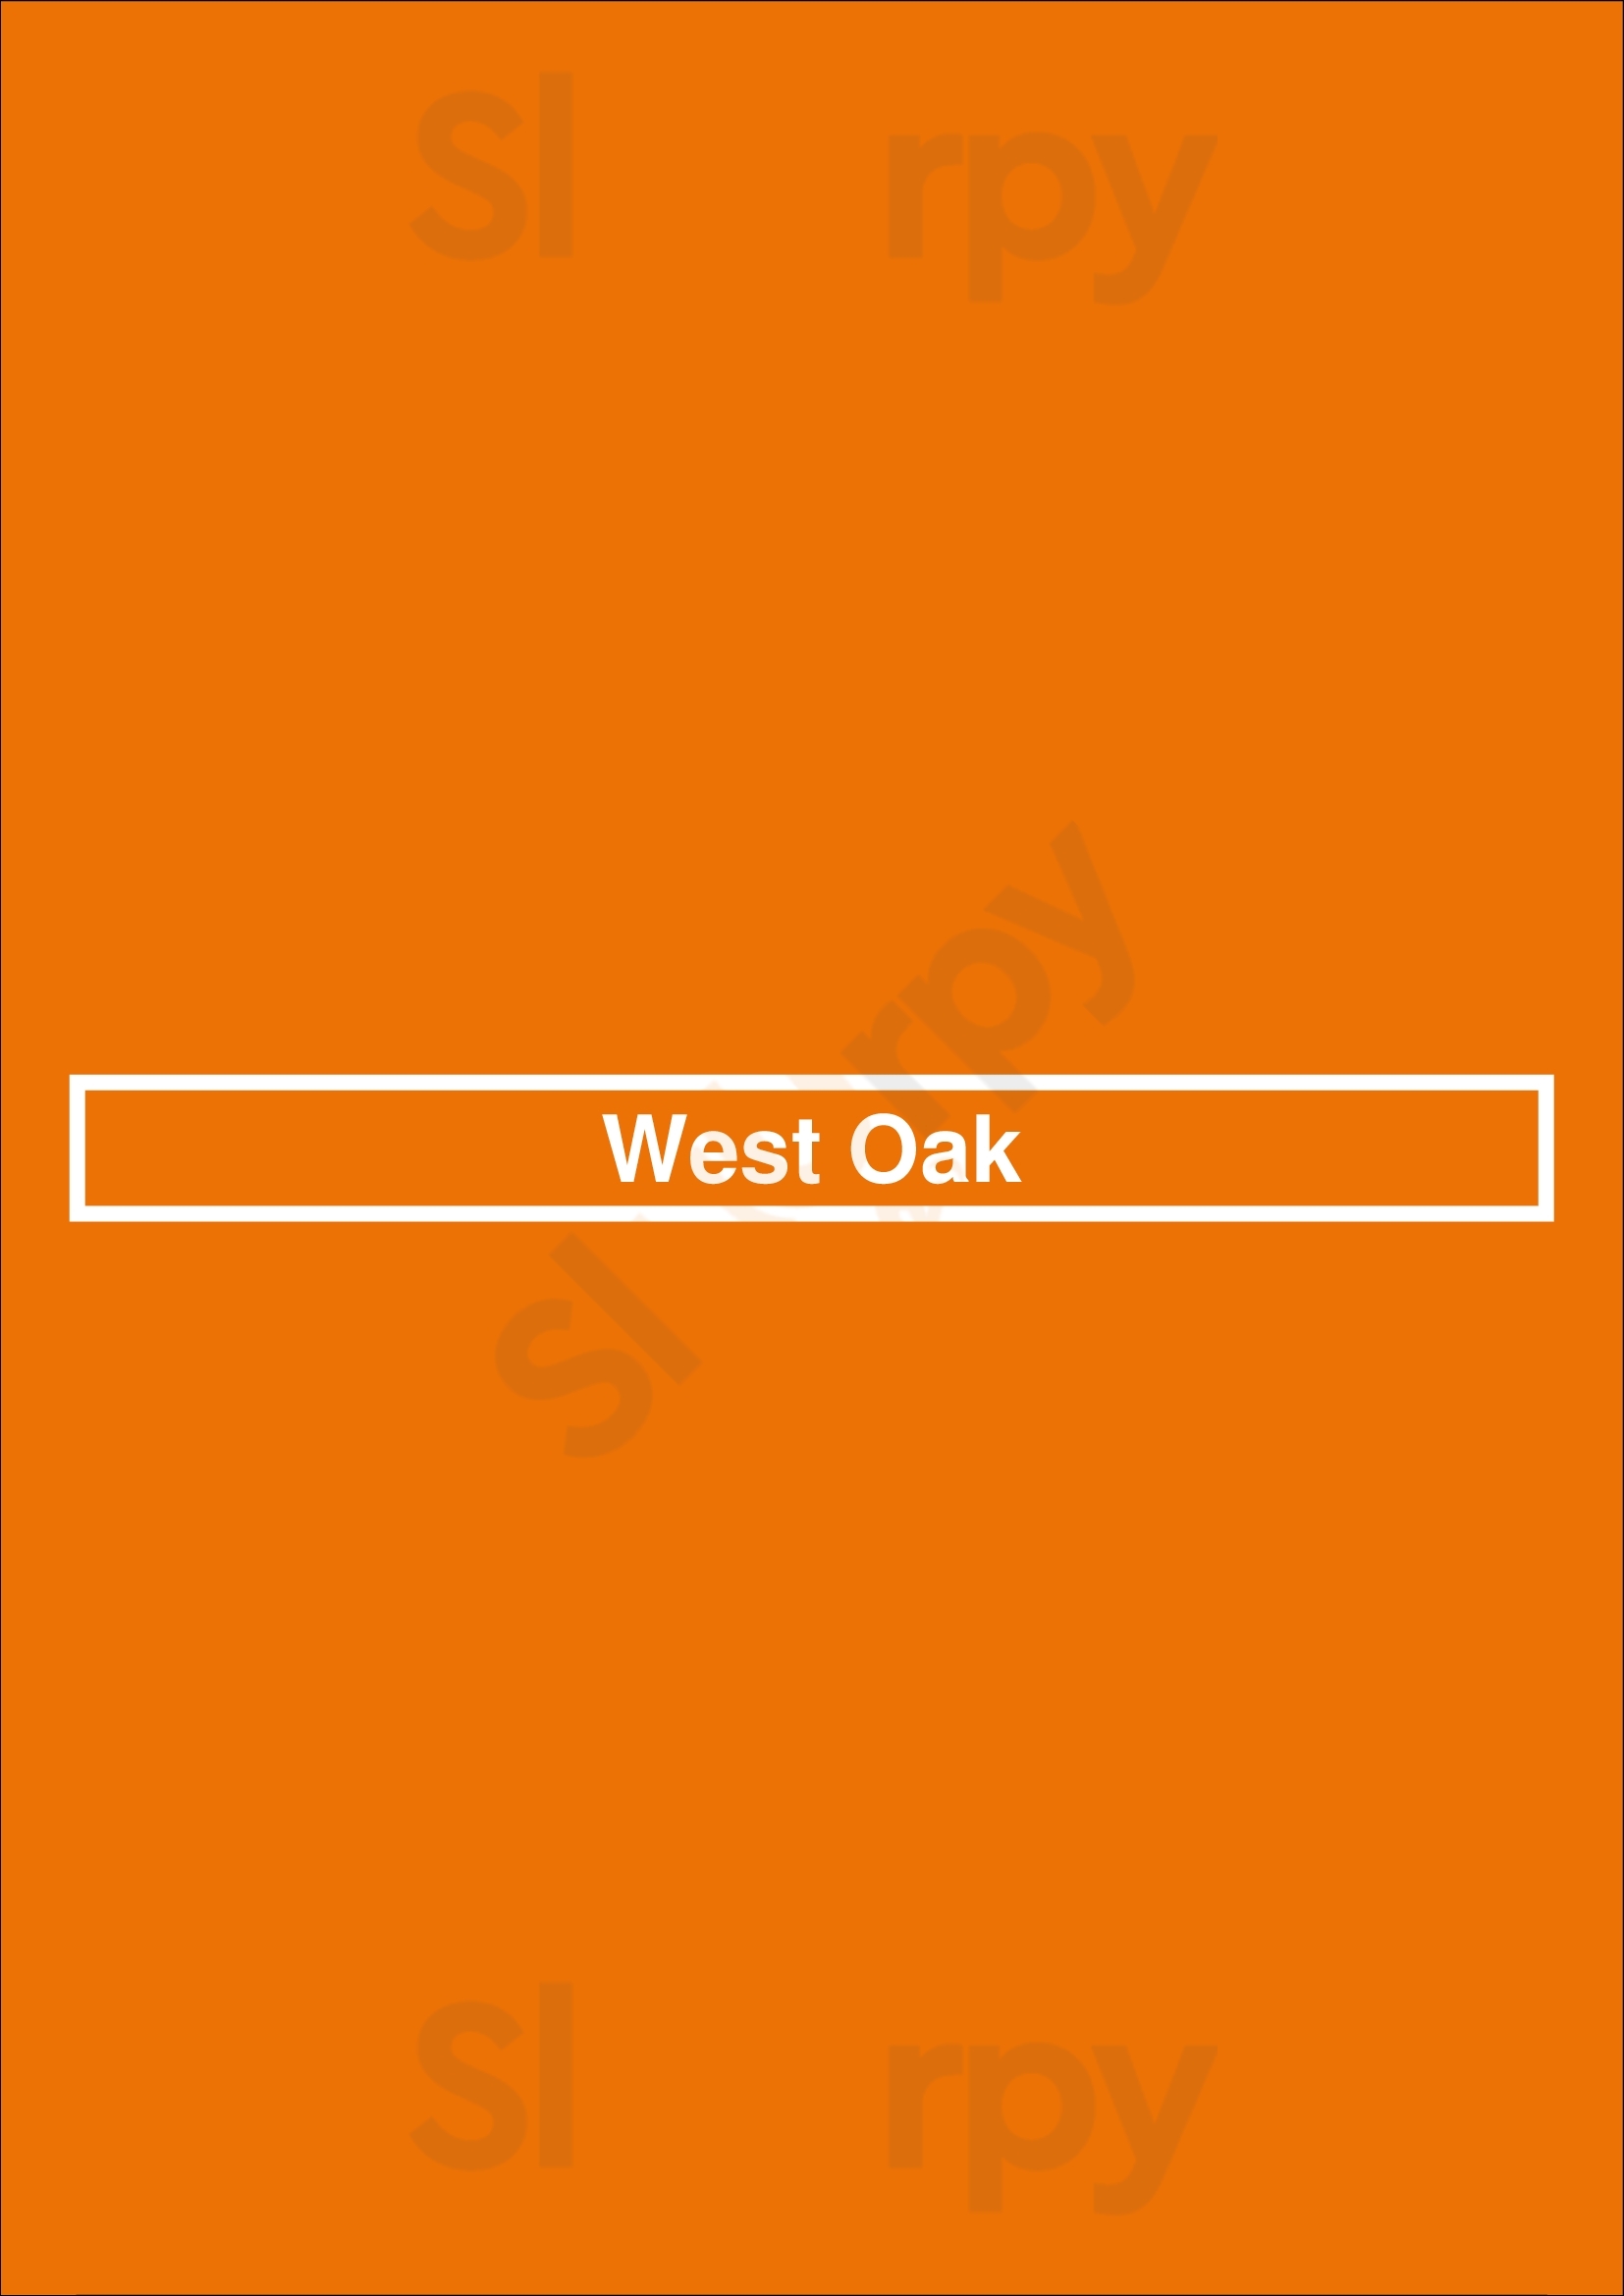 West Oak Vancouver Menu - 1